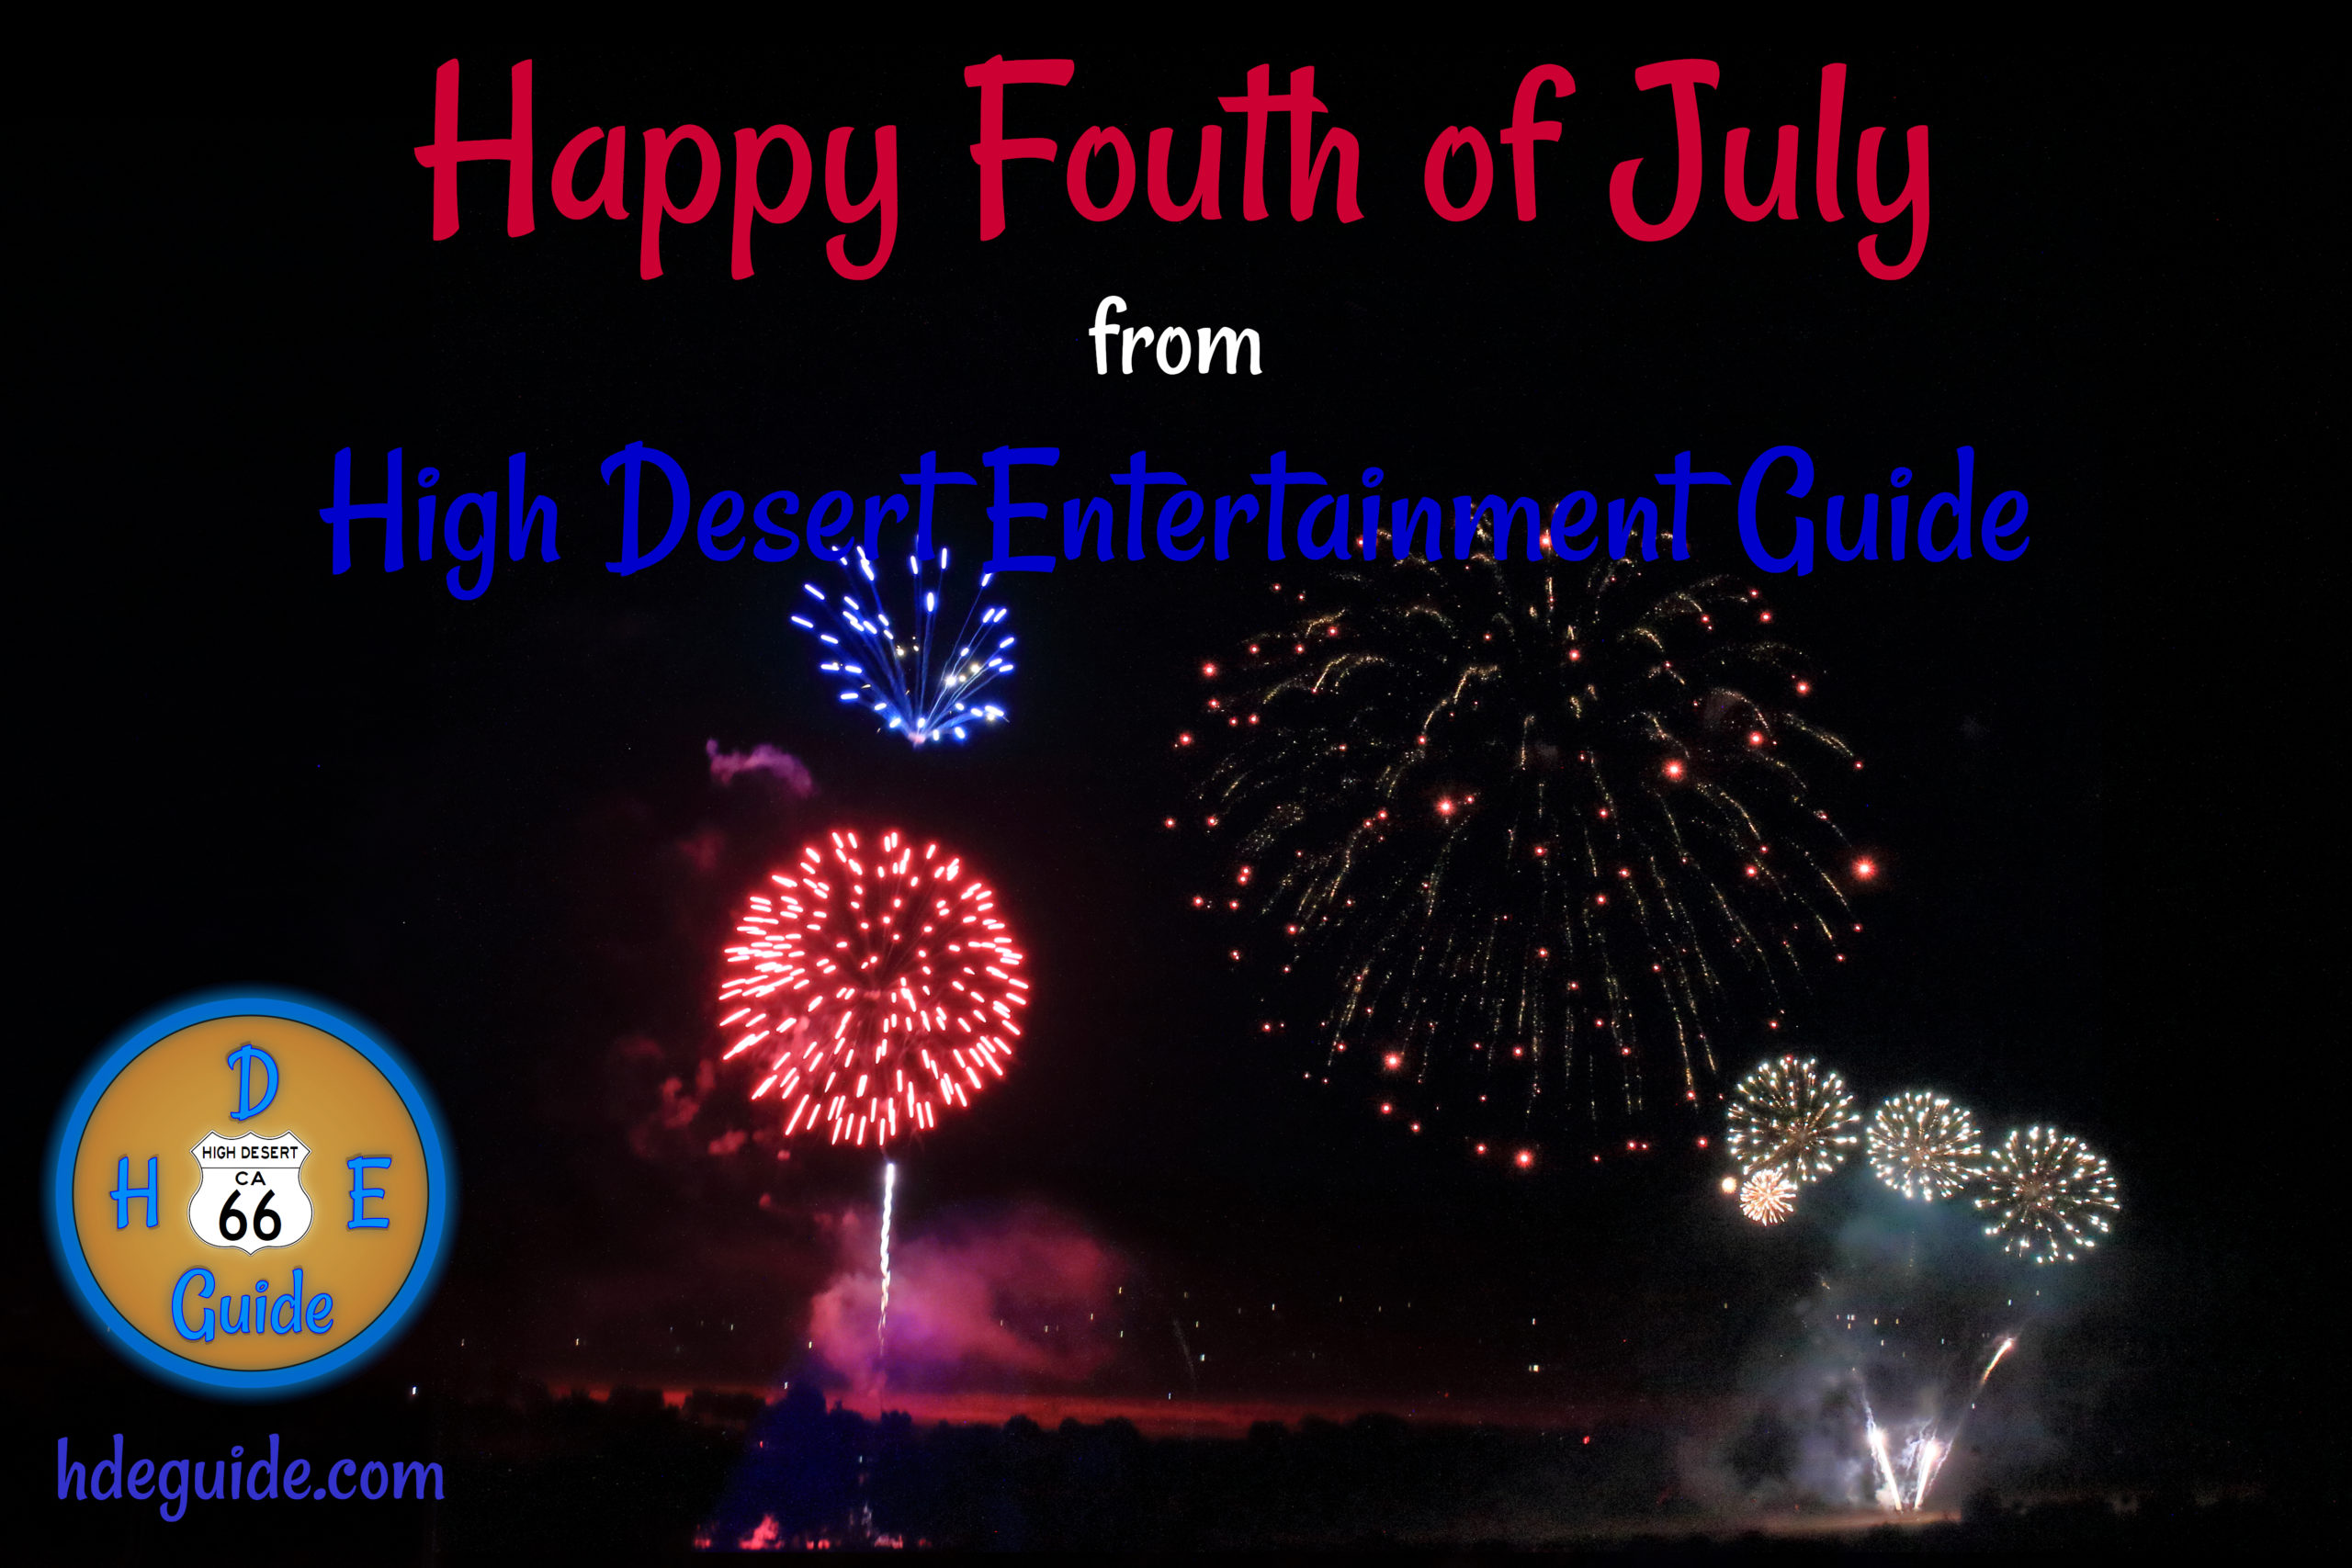 HDEG Happy Fourth of July Image